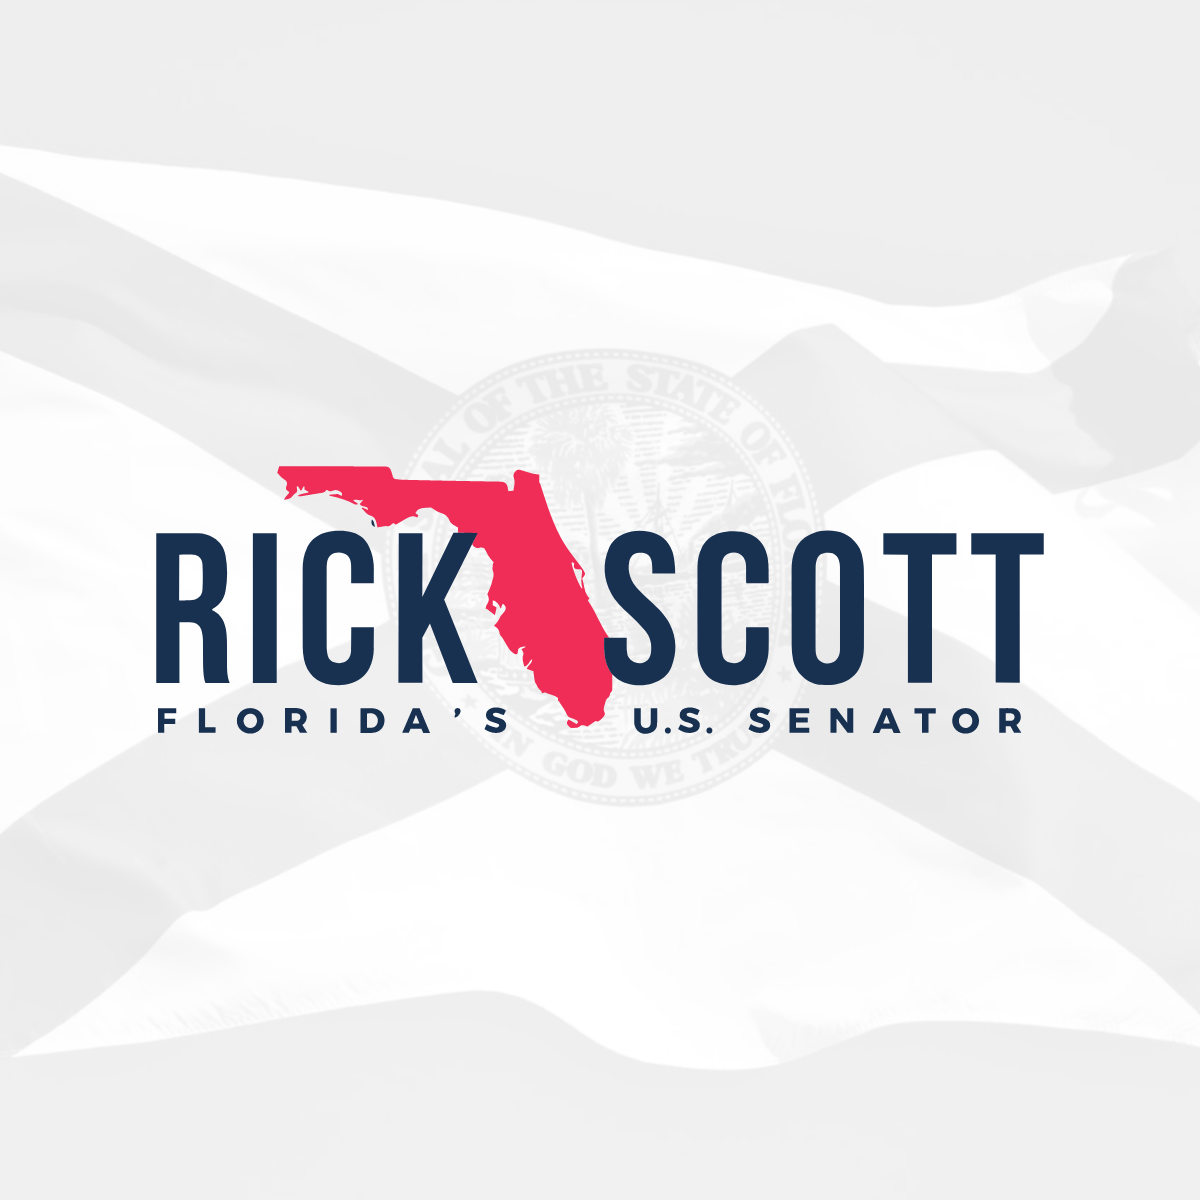 www.rickscott.senate.gov